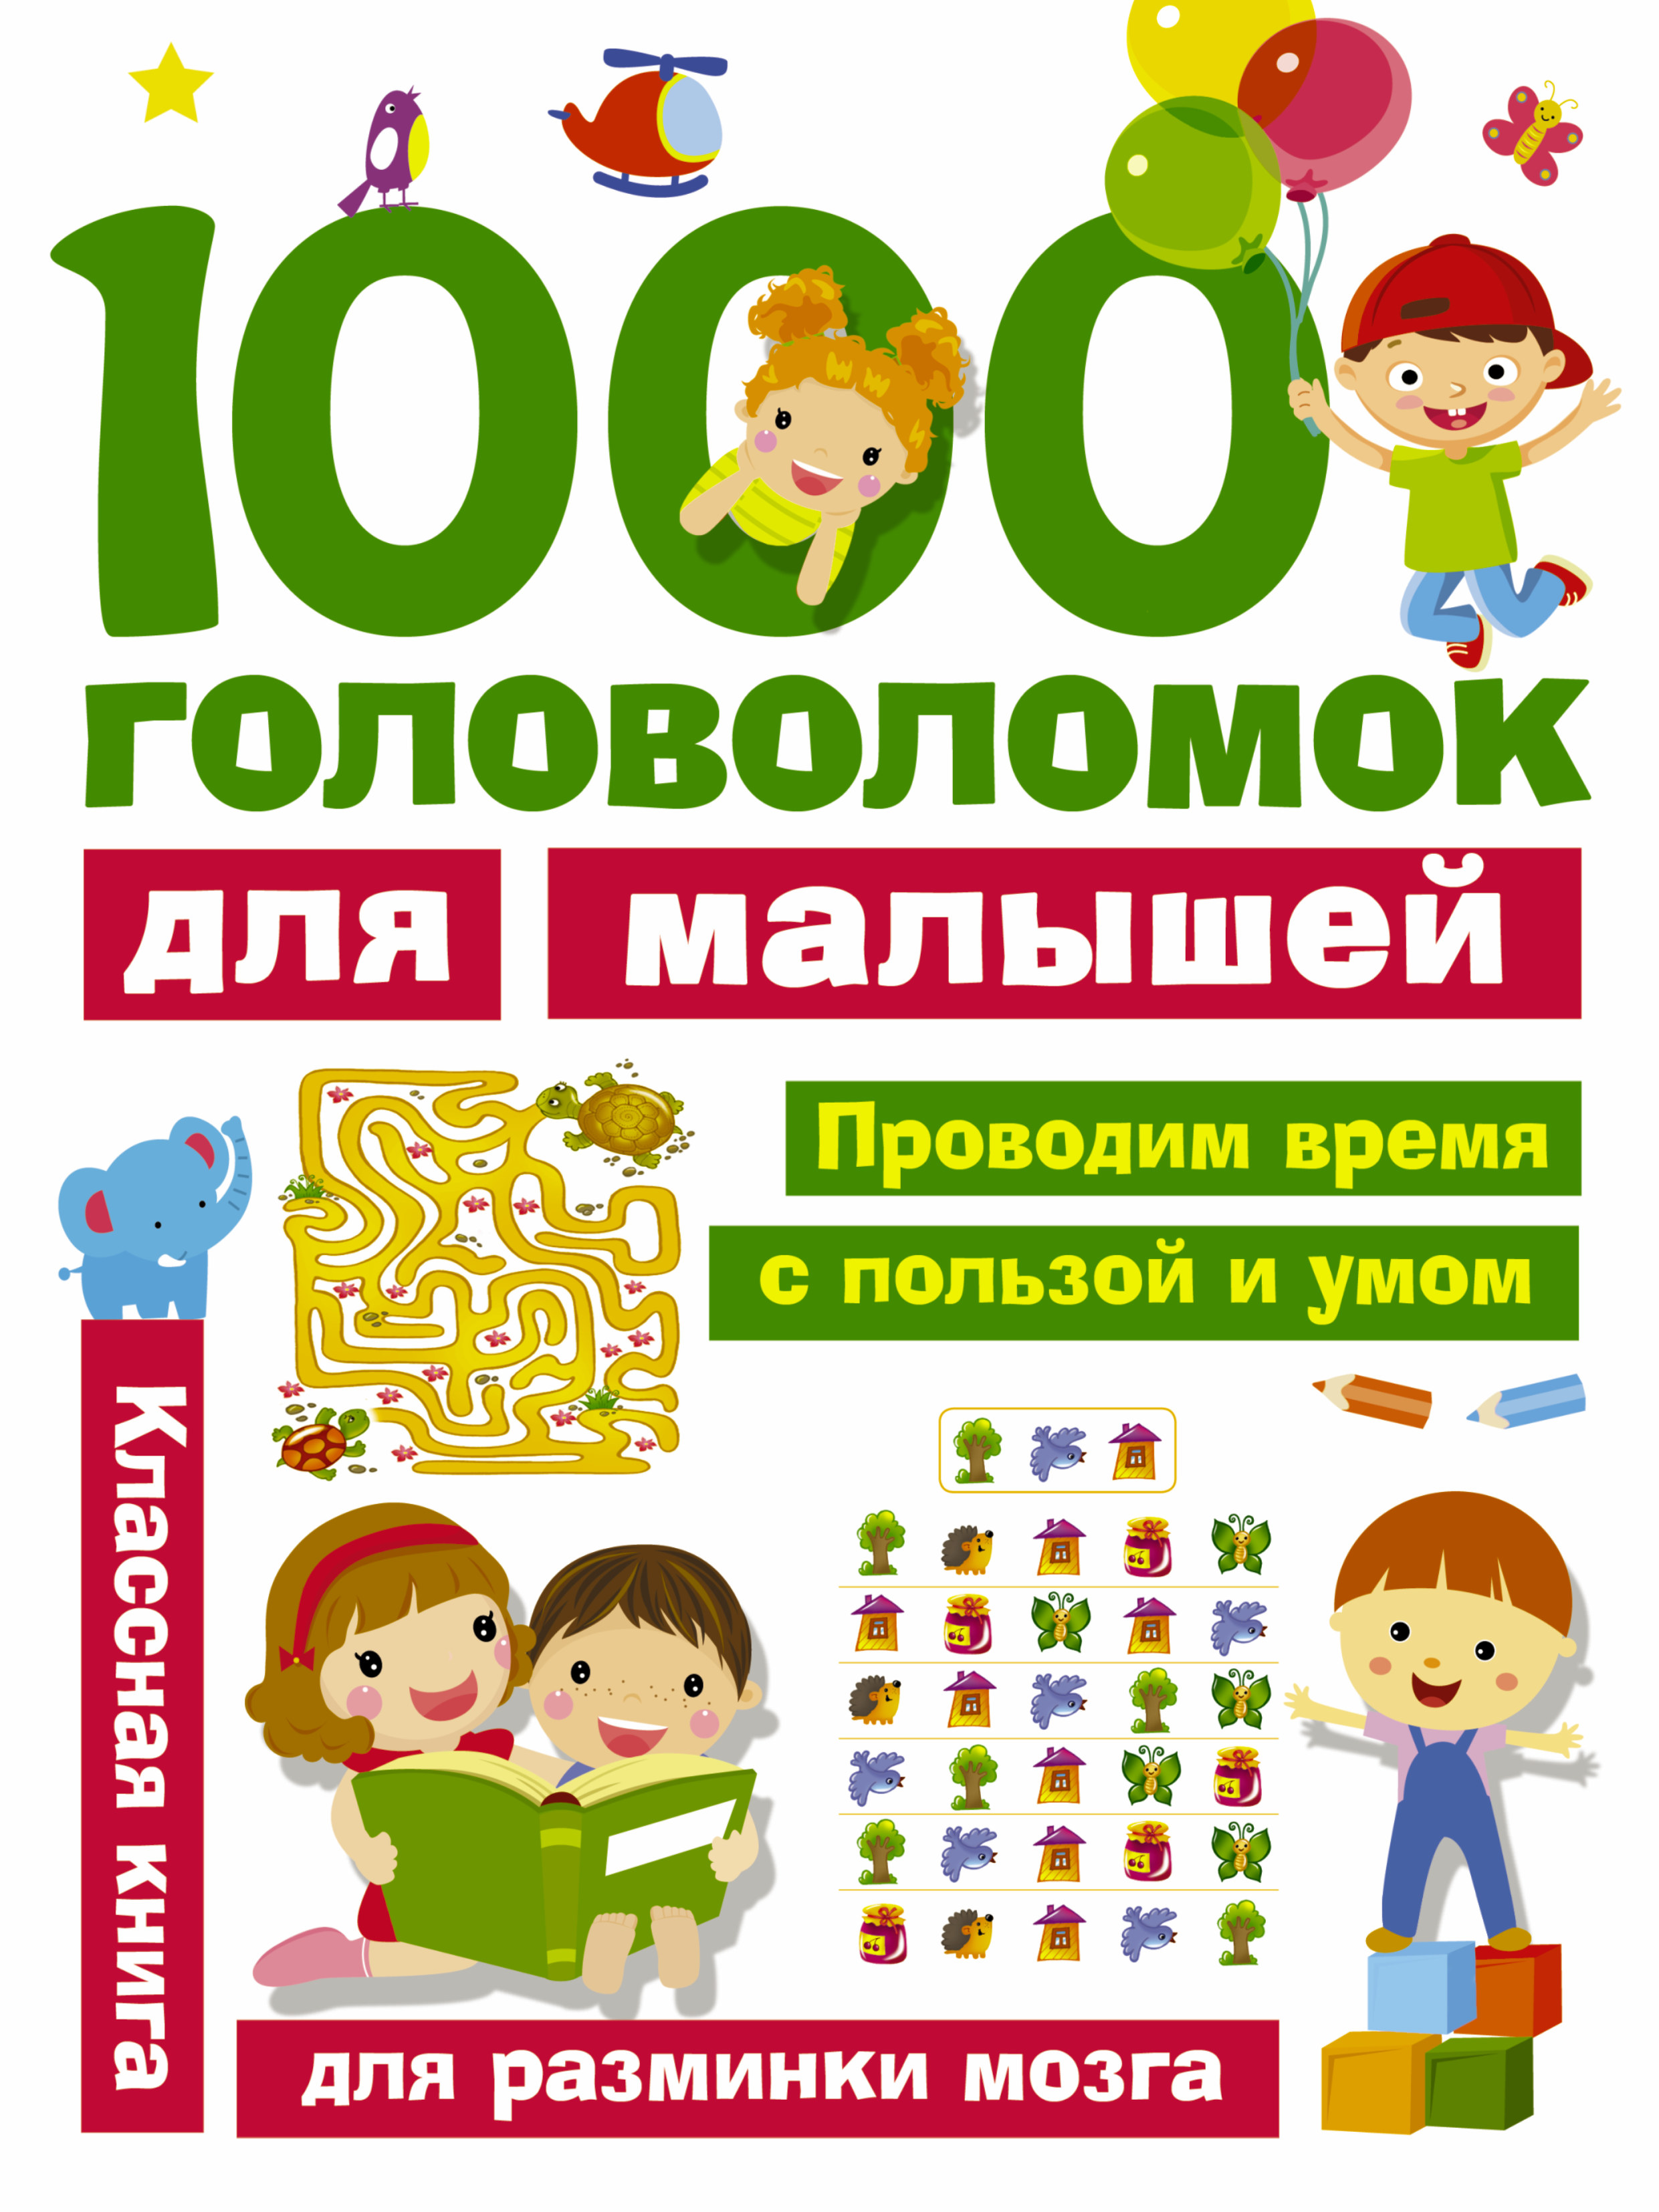  1000 головоломок для малышей - страница 0